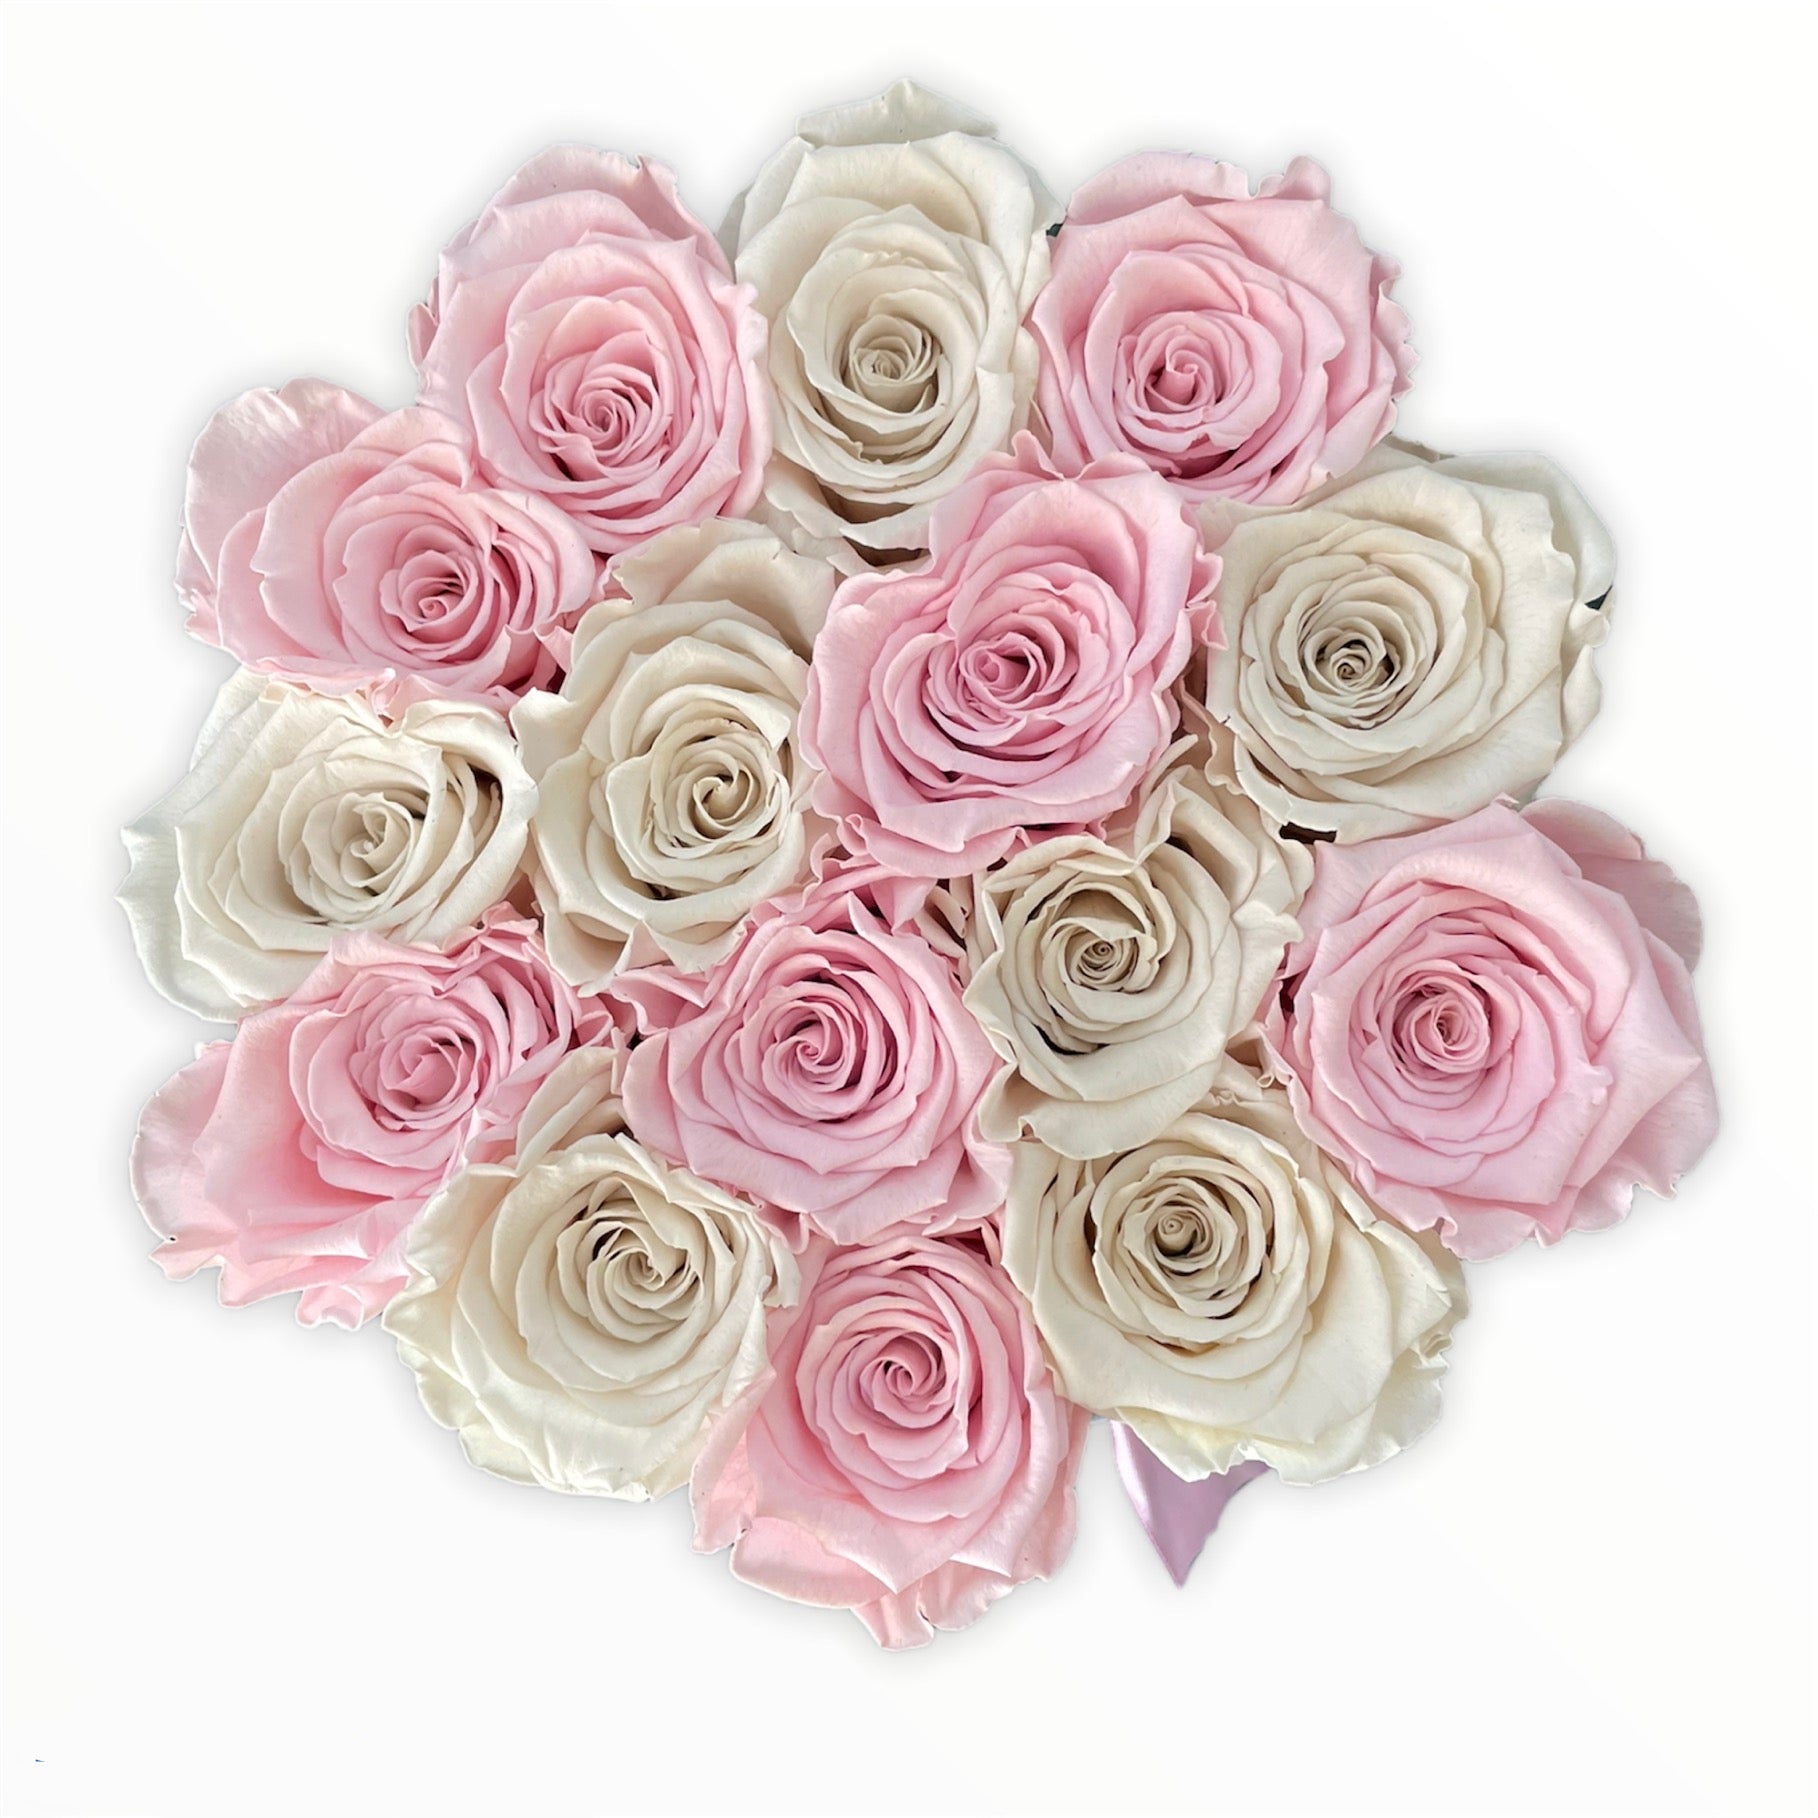 Trandafiri criogenati roz și albi in cutie mică